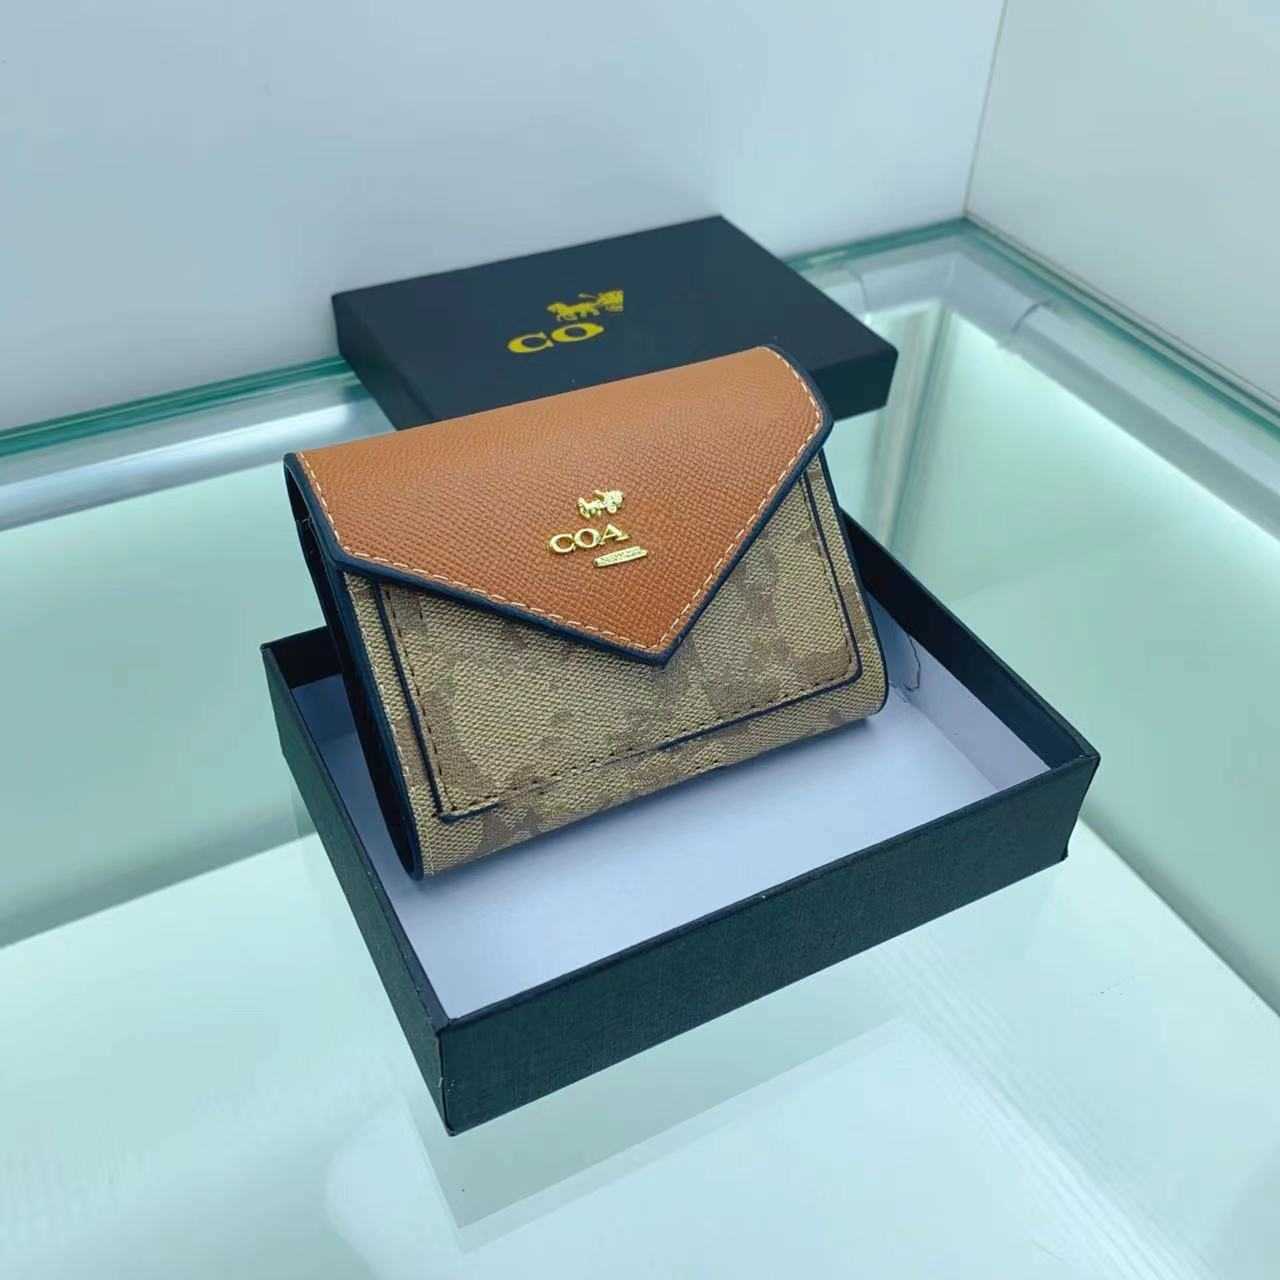 Bolsas 90% de desconto Novo estilo curto dobra cor correspondência carteira bolsa feminina caixa de saída produtos de luxo